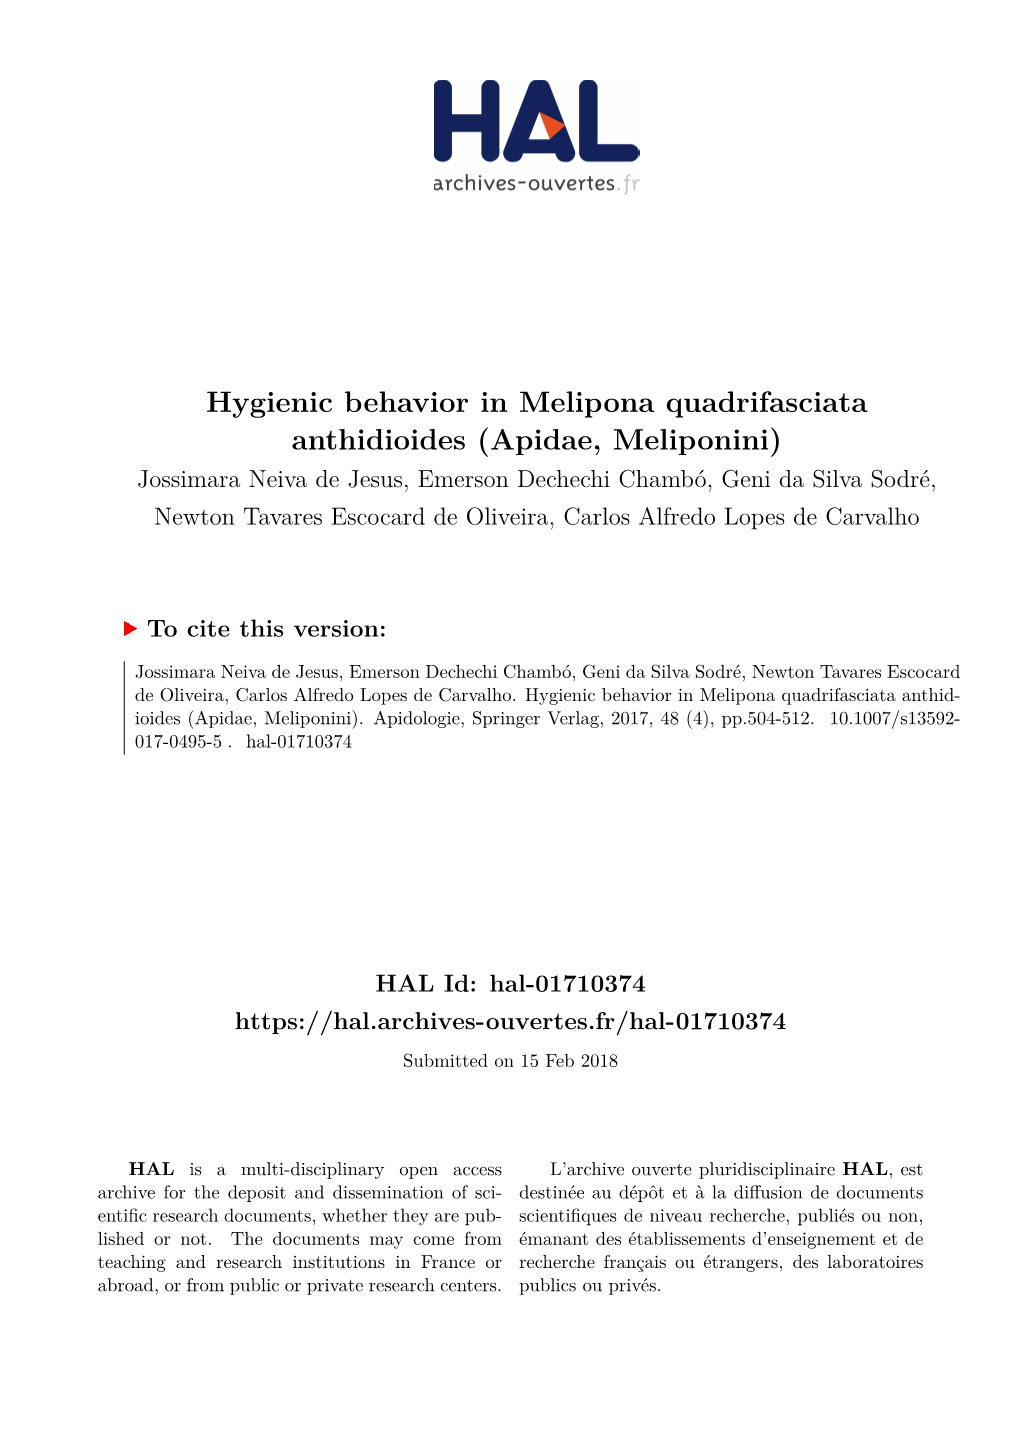 Hygienic Behavior in Melipona Quadrifasciata Anthidioides (Apidae